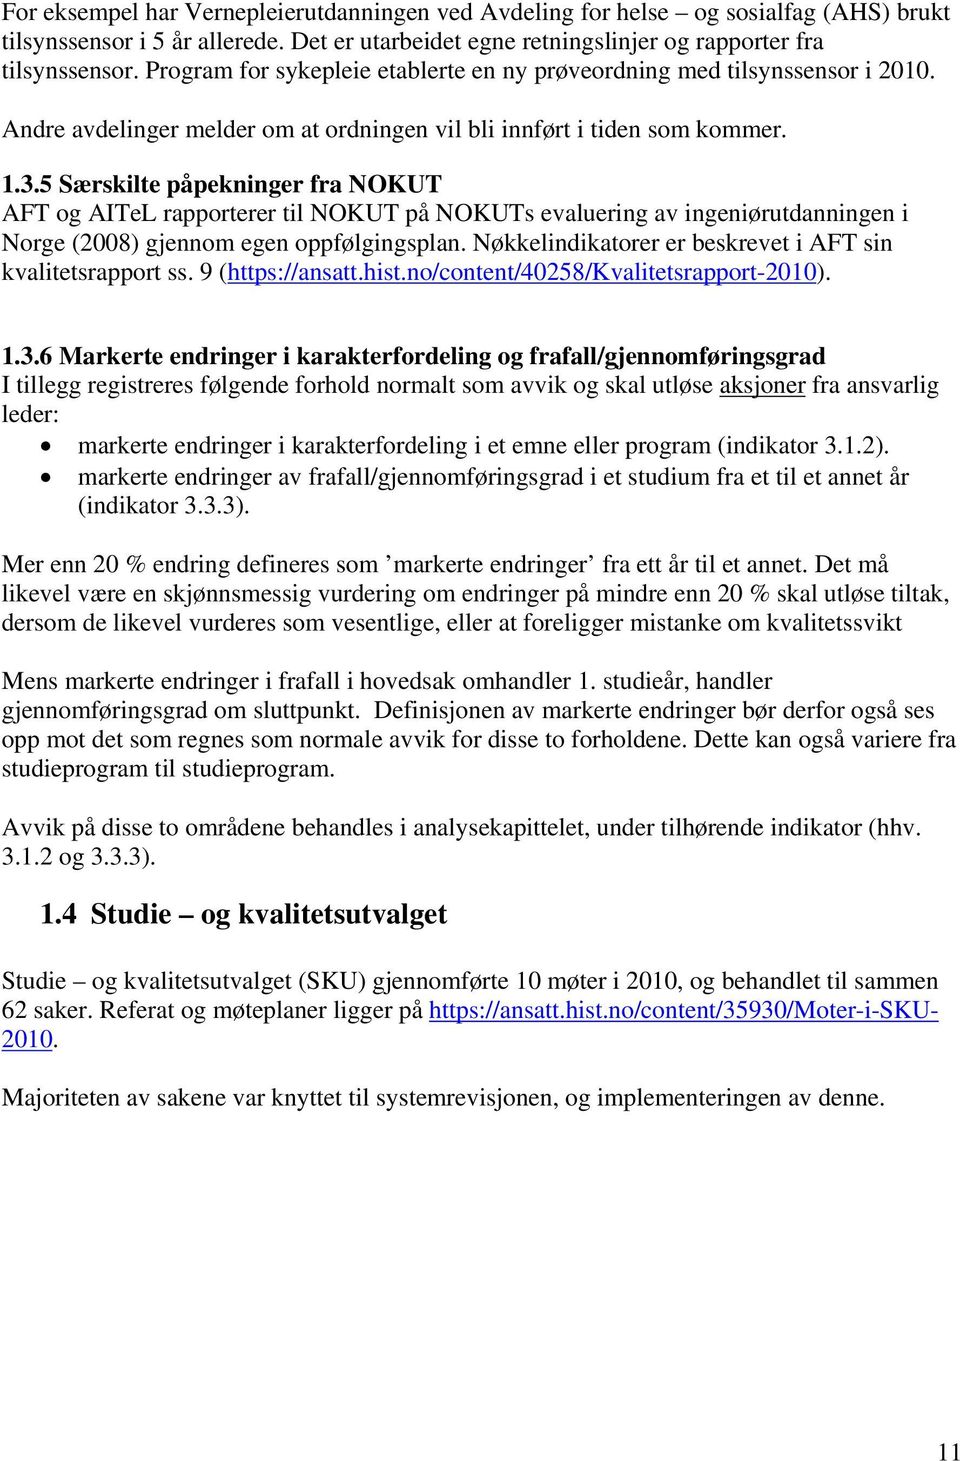 5 Særskilte påpekninger fra NOKUT AFT og AITeL rapporterer til NOKUT på NOKUTs evaluering av ingeniørutdanningen i Norge (2008) gjennom egen oppfølgingsplan.